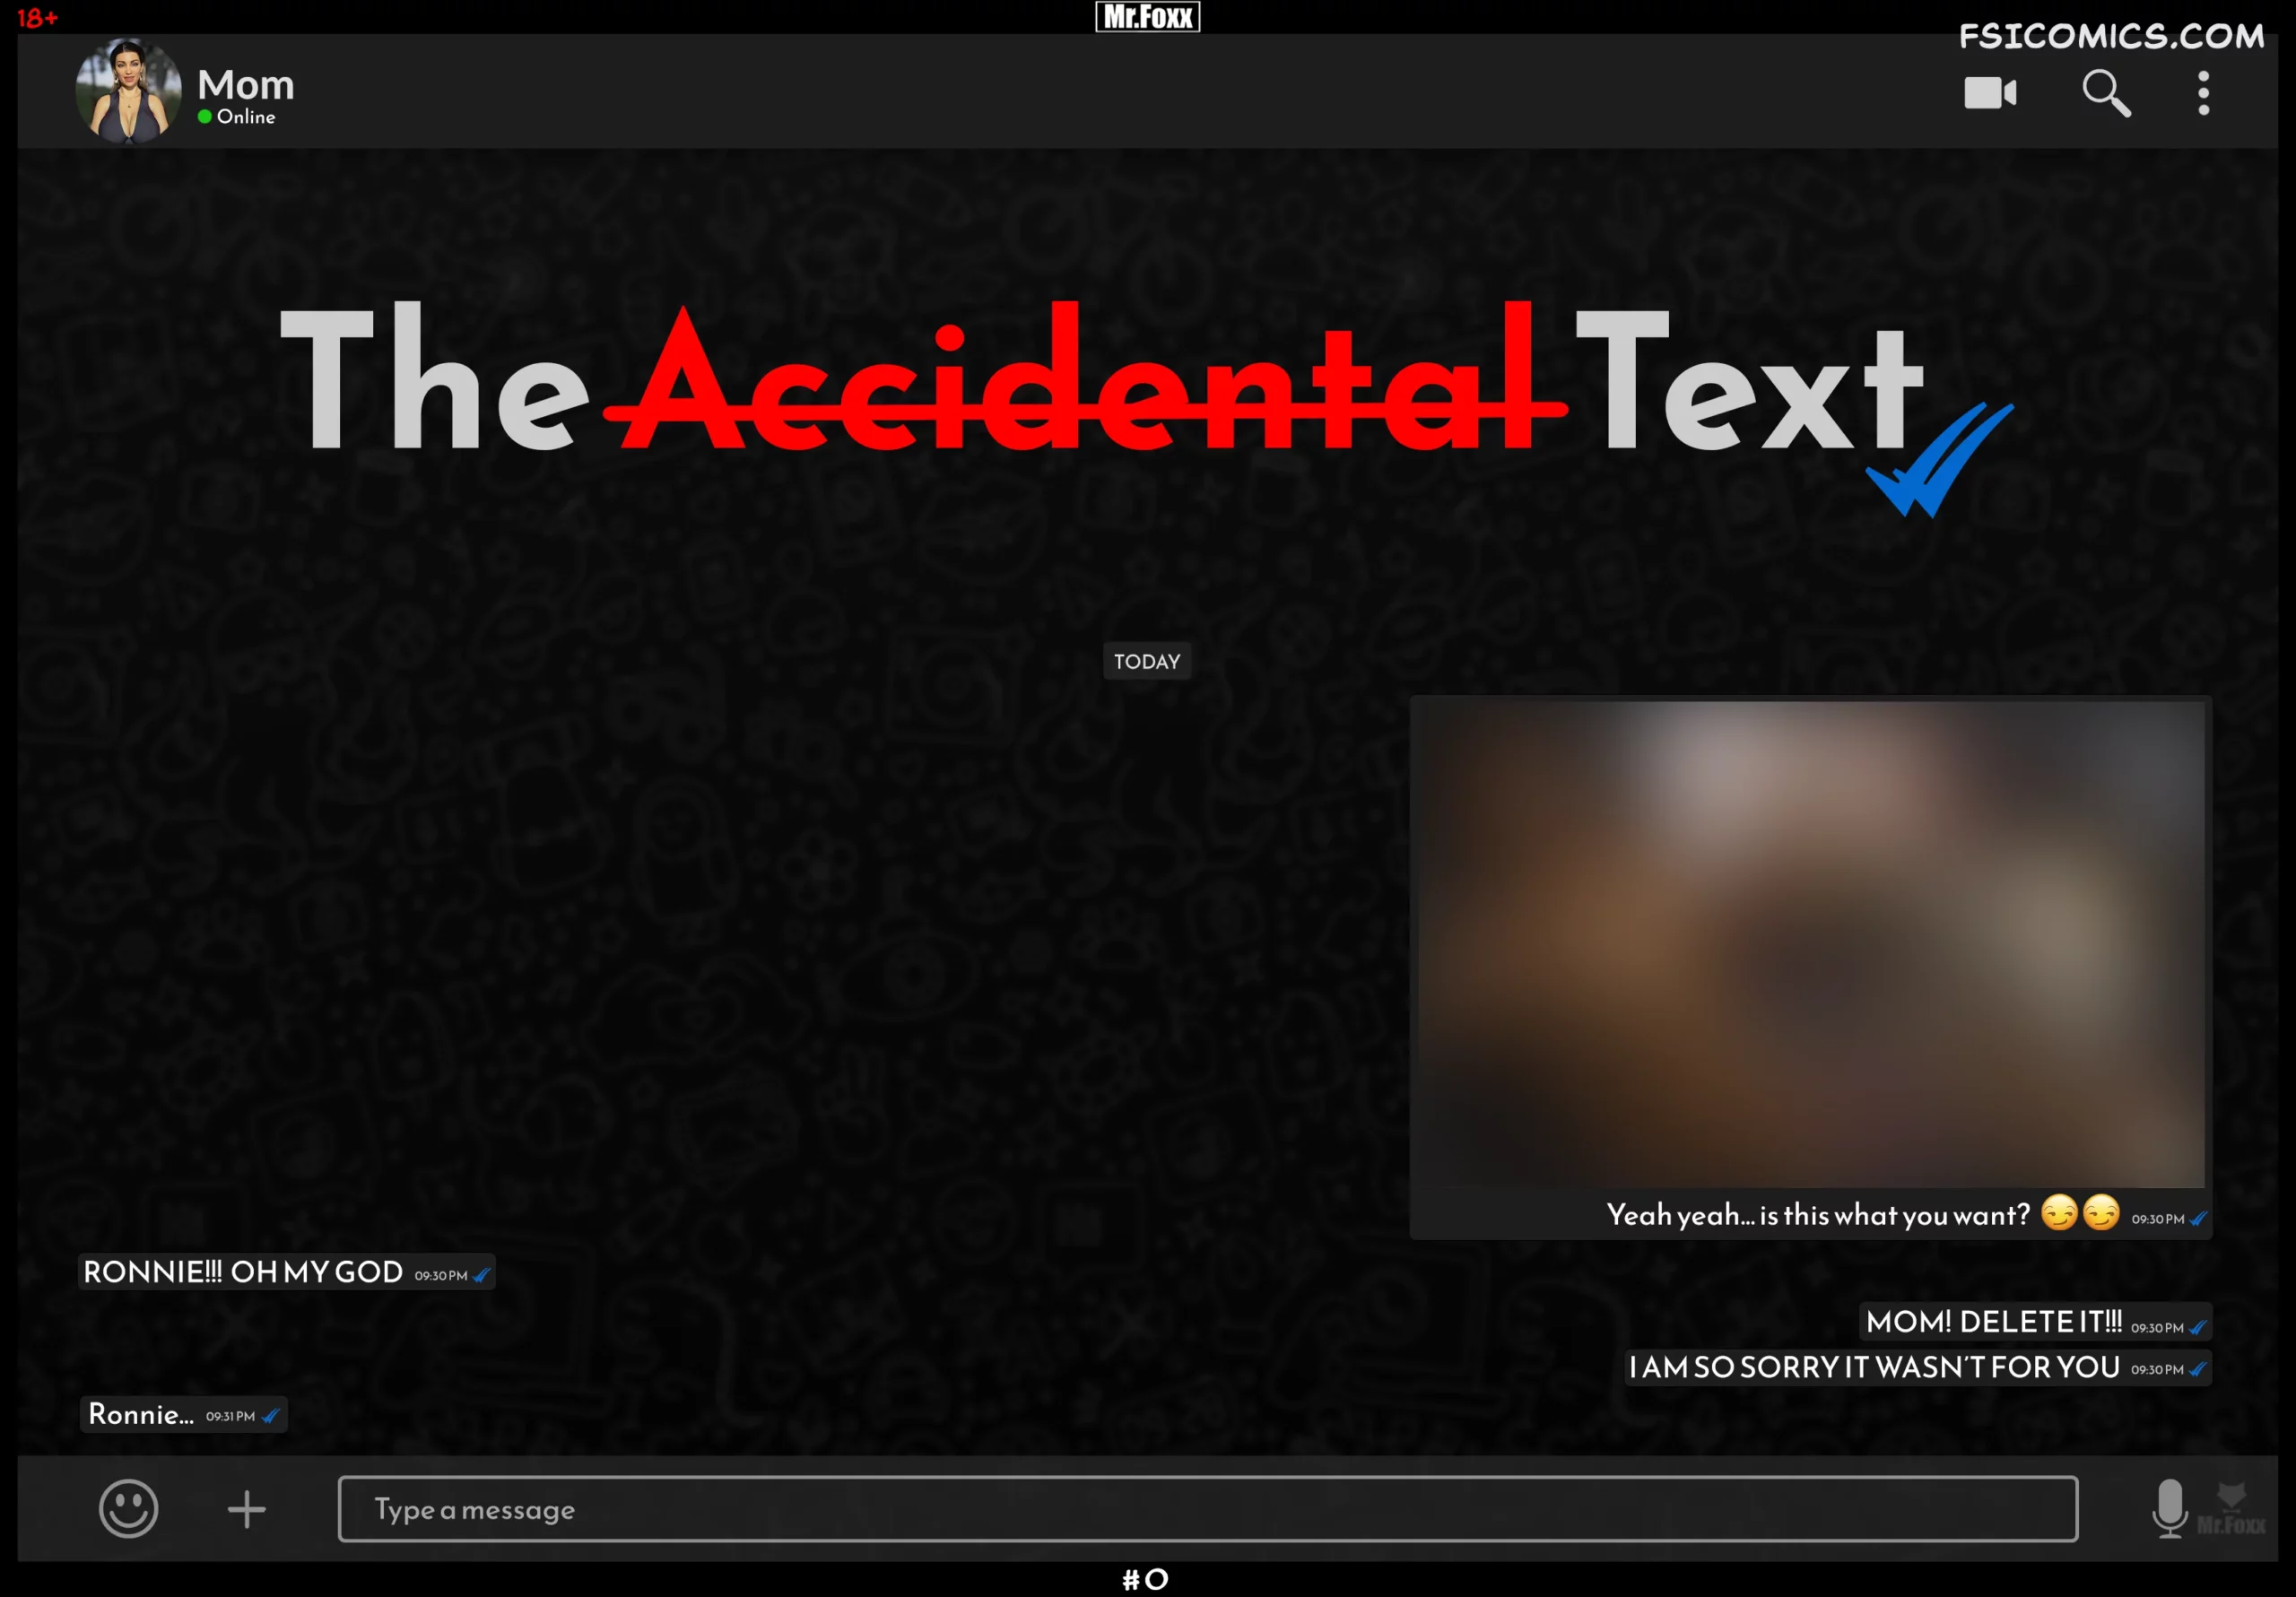 The Accidental Text - Mr.FOXX - 159 - FSIComics